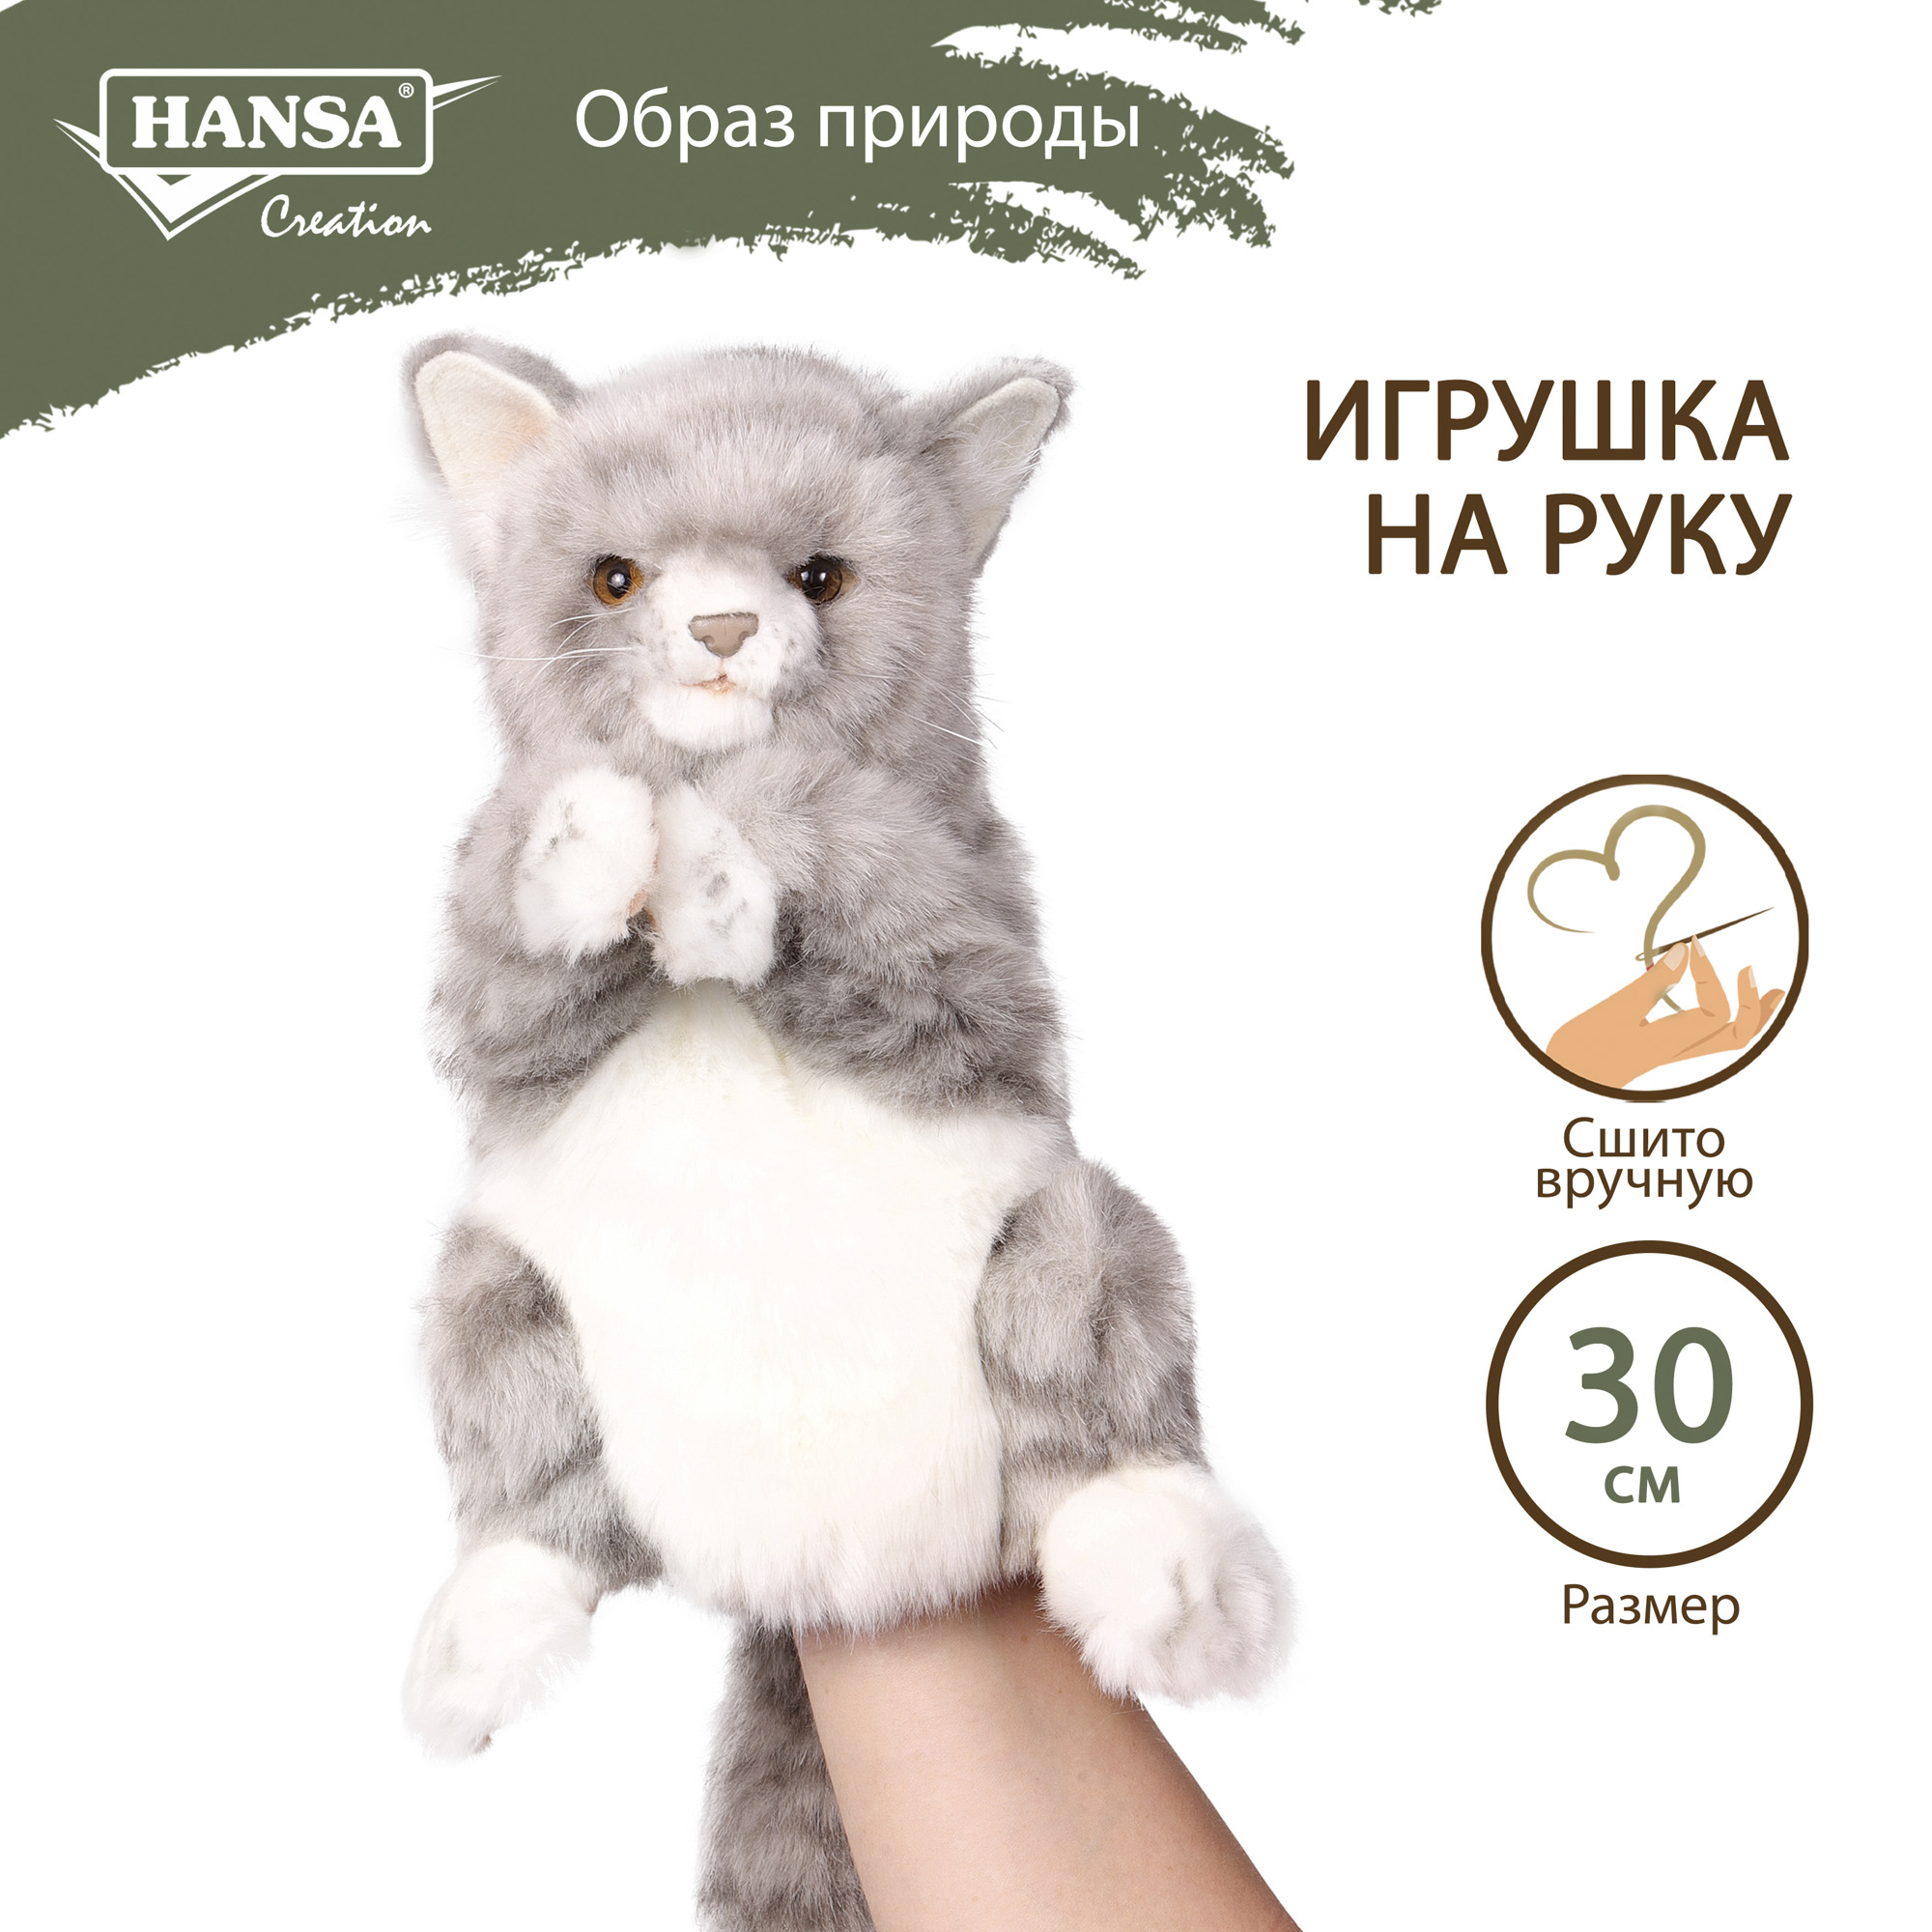 Реалистичная мягкая игрушка HANSA Кошка игрушка на руку 30 см - фото 1